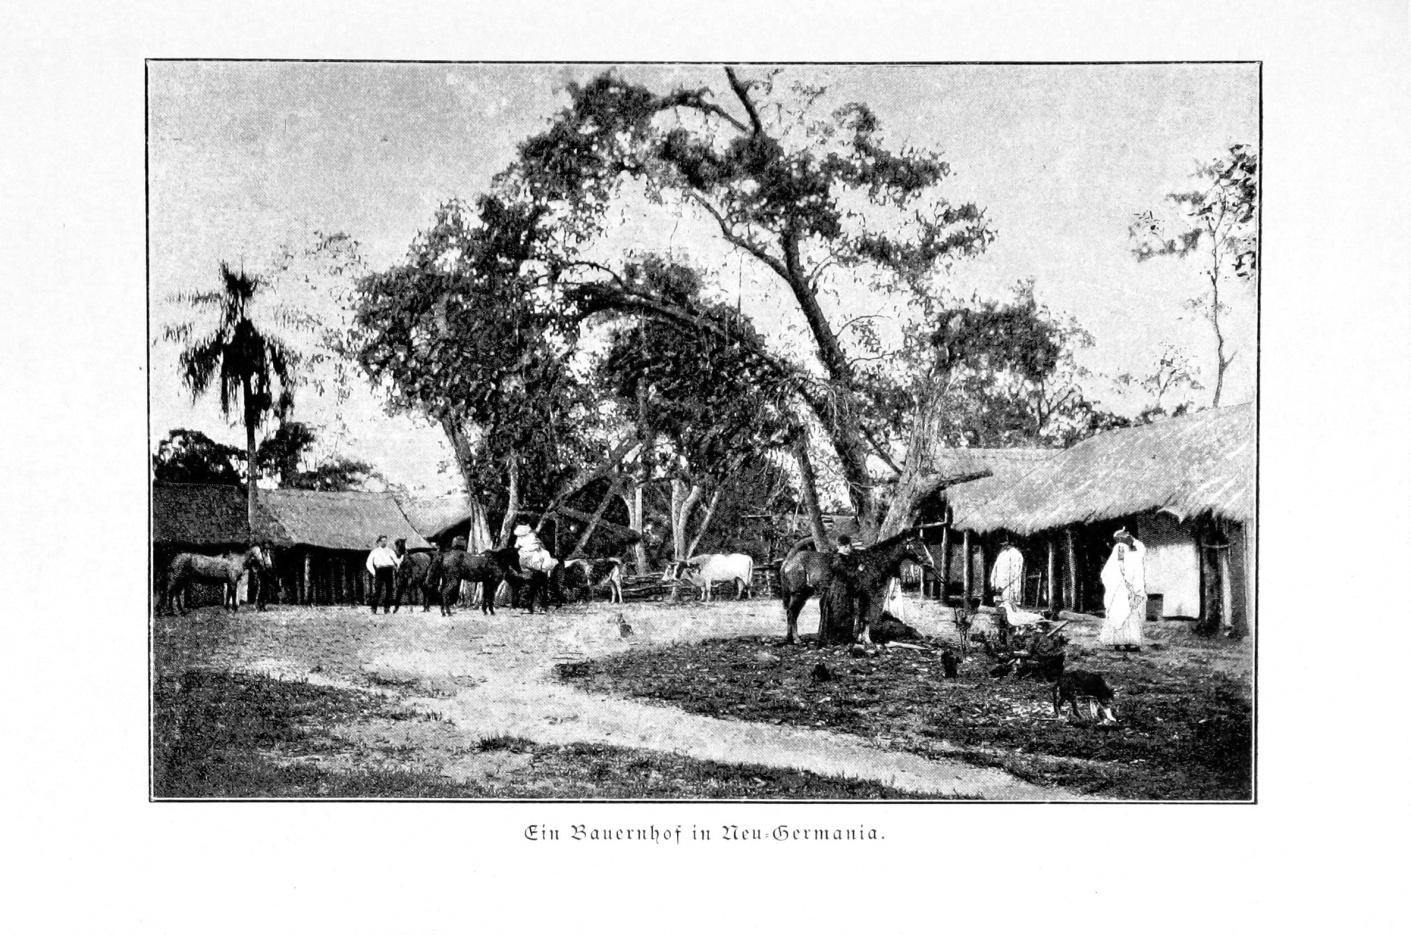 Ein Bauernhof in Neu-Germania, Quelle: Elisabeth Förster, „Dr. Bernhard Förster's Kolonie Neu-Germania in Paraguay“, 1891